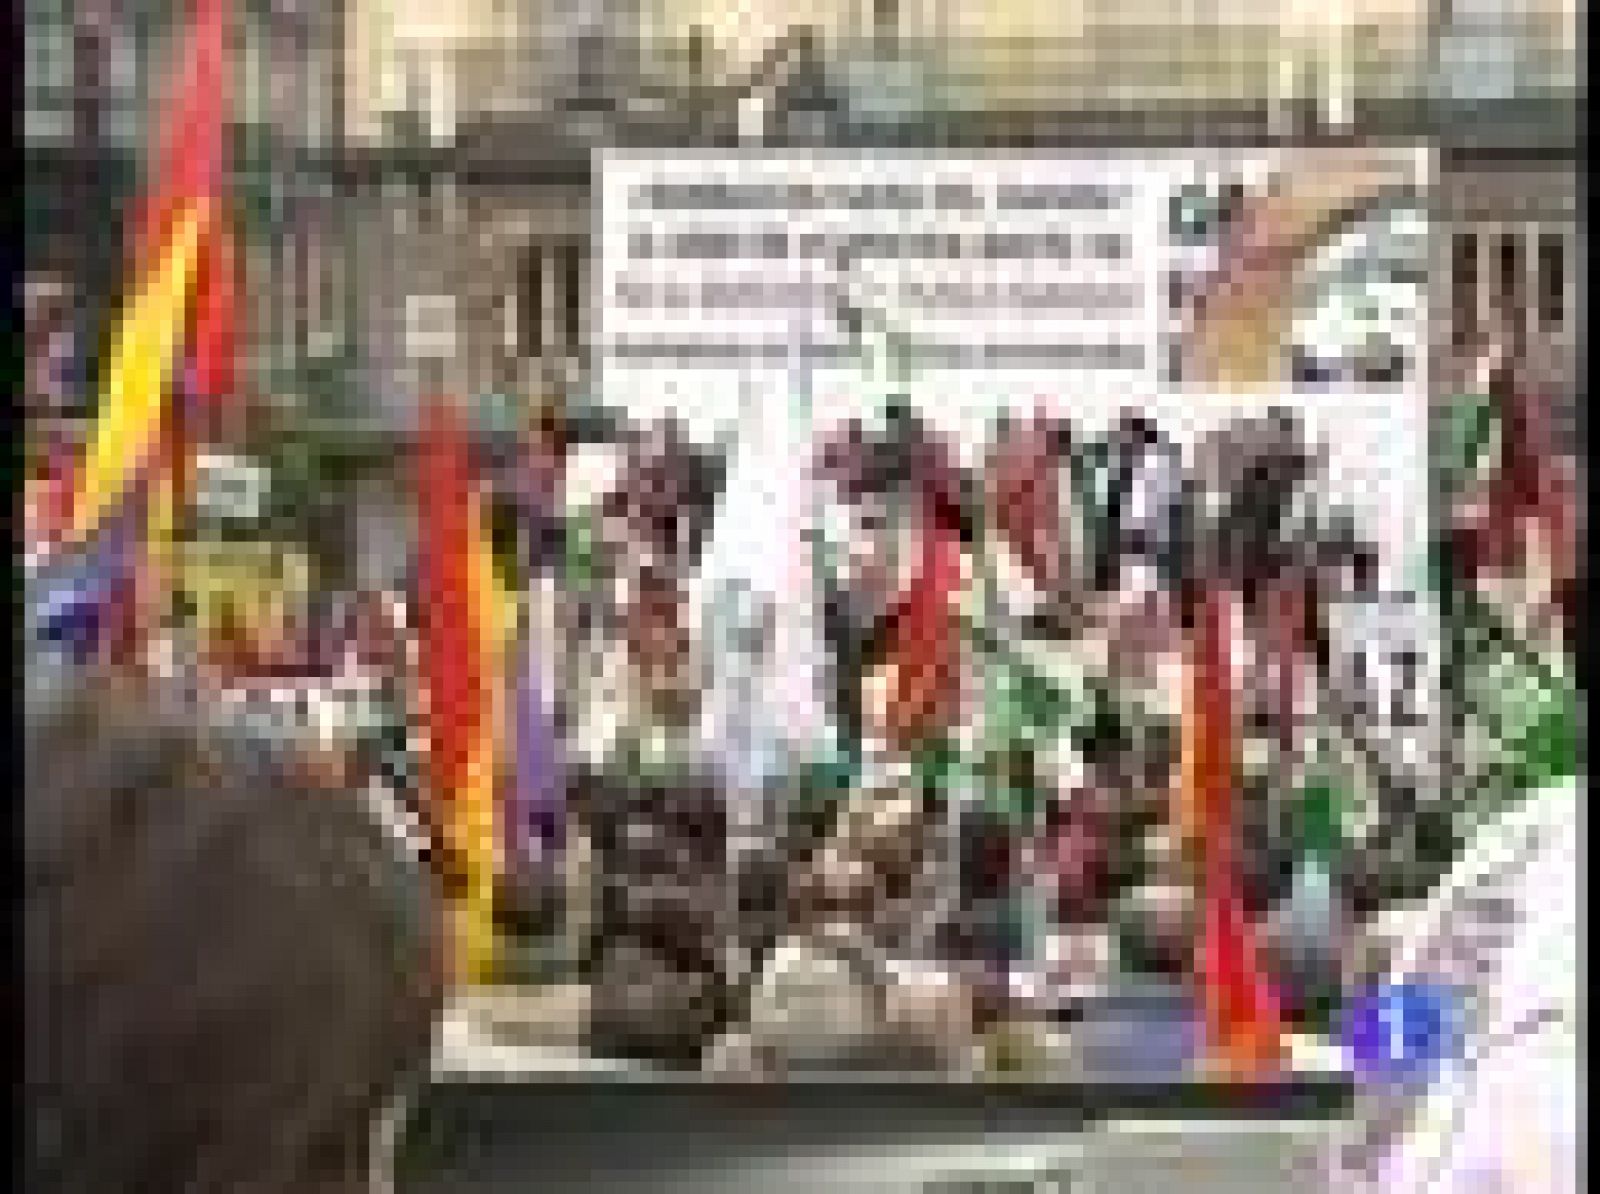  Javier Bardem denuncia el "puro olvido" del pueblo saharaui en la manifestación de Madrid